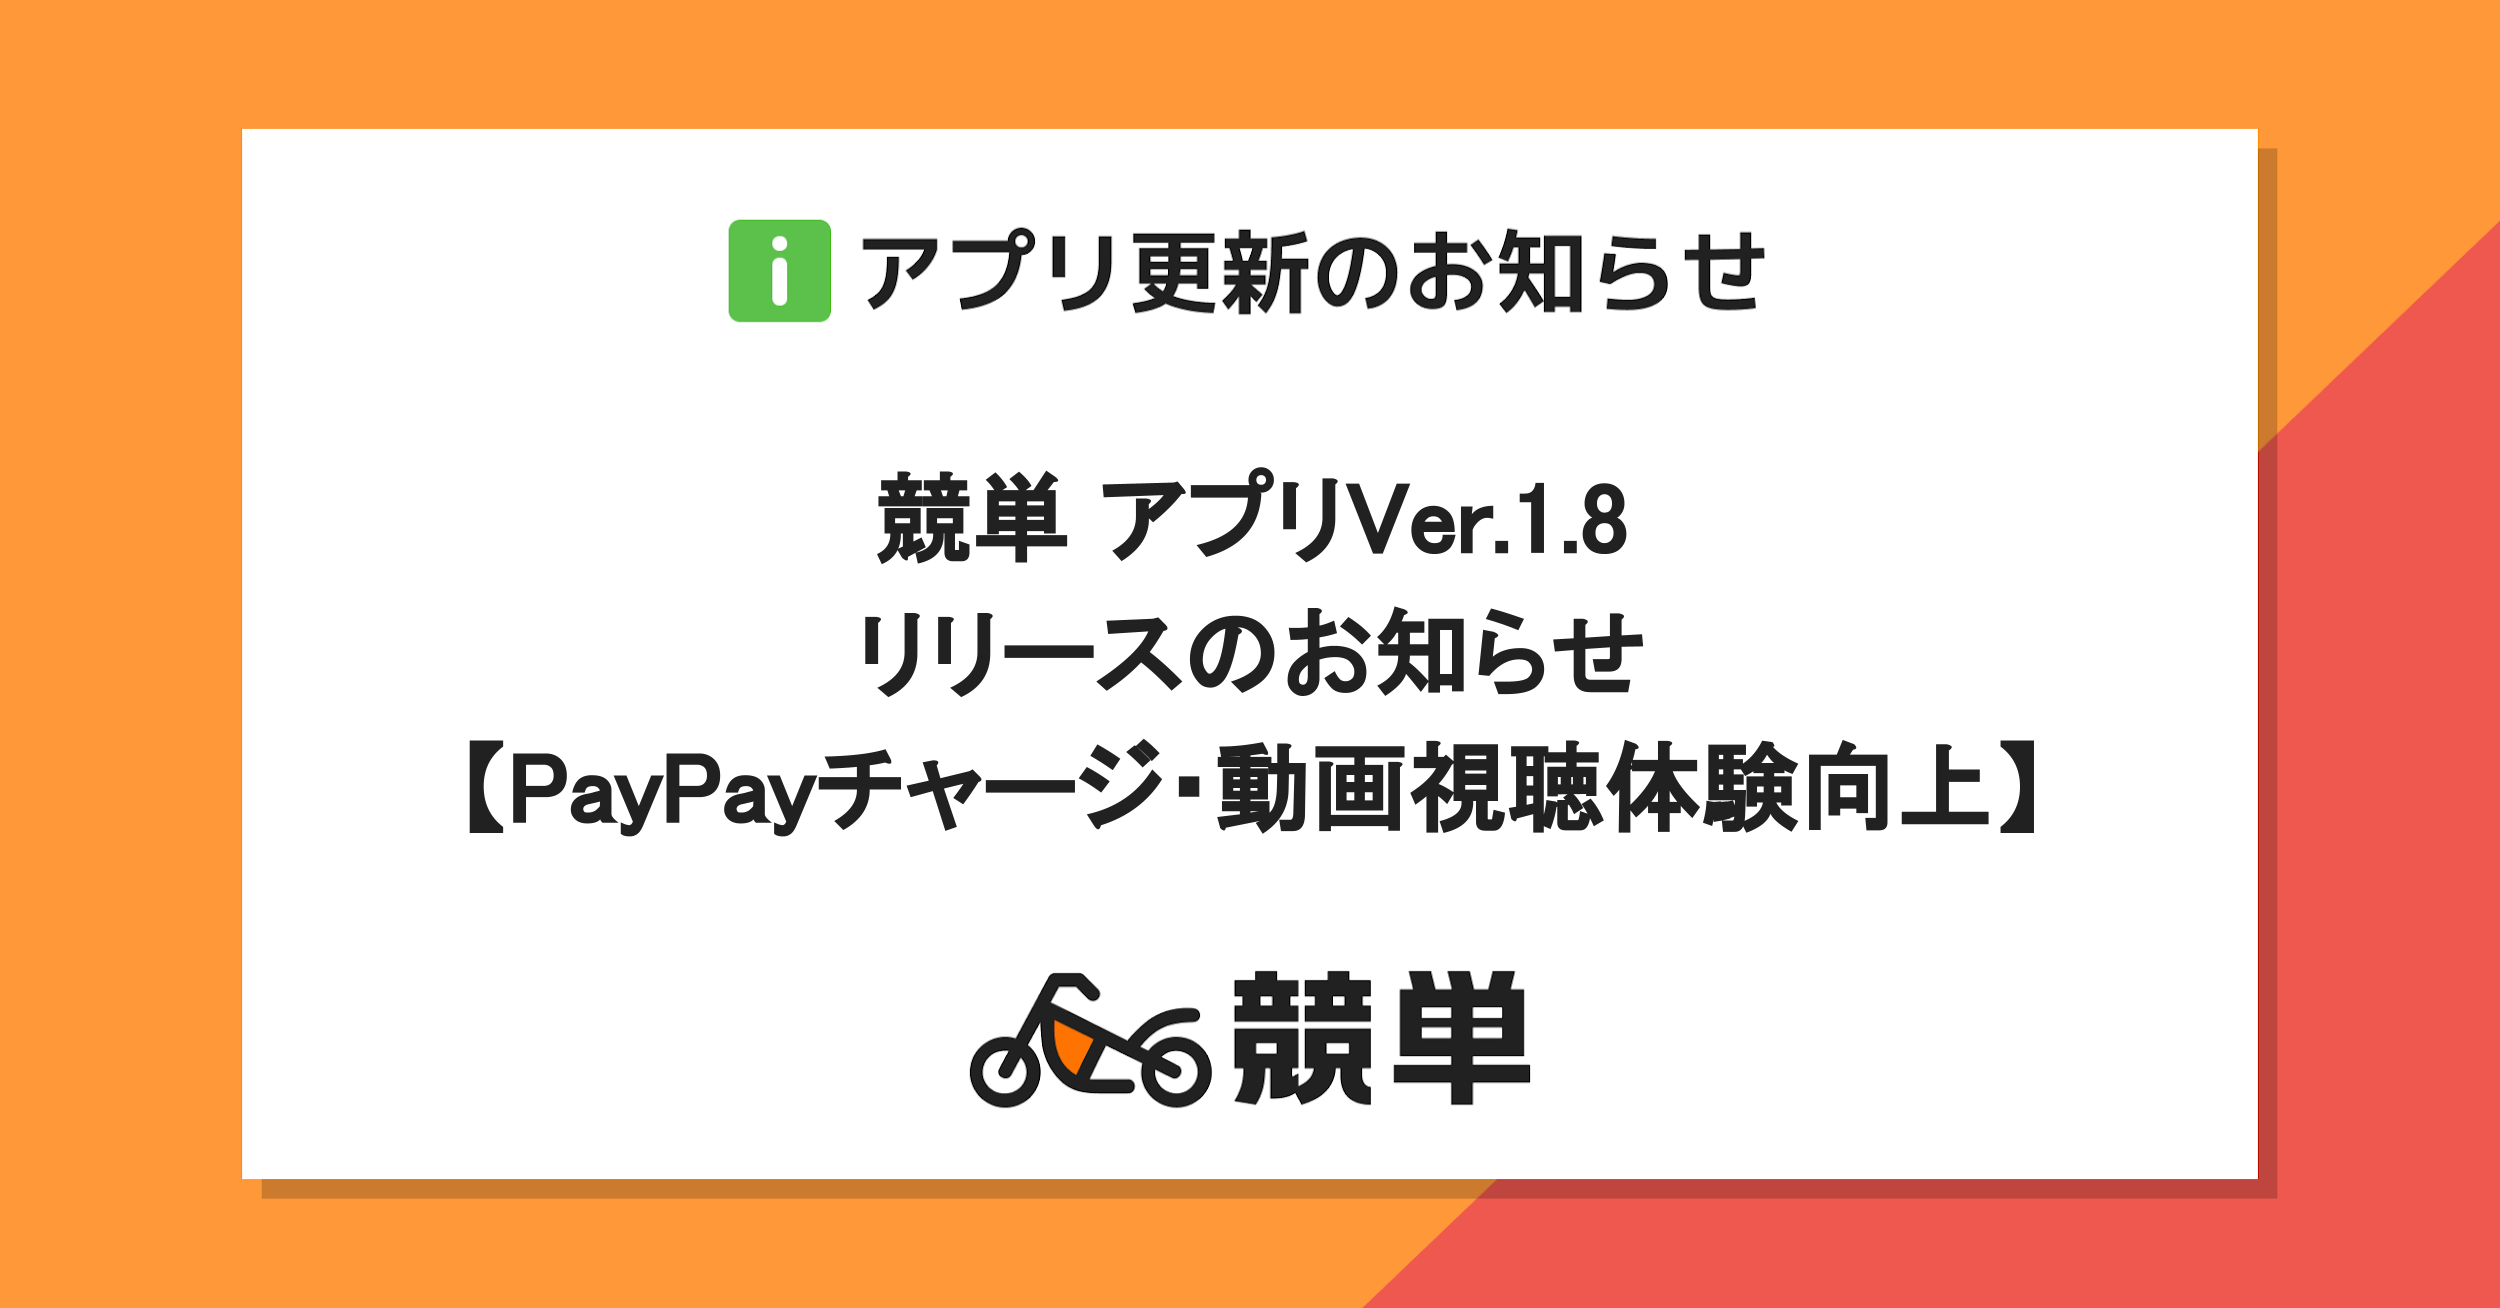 【PayPayチャージ・動画視聴体験改善】アプリ競単Ver.1.8リリースのお知らせ